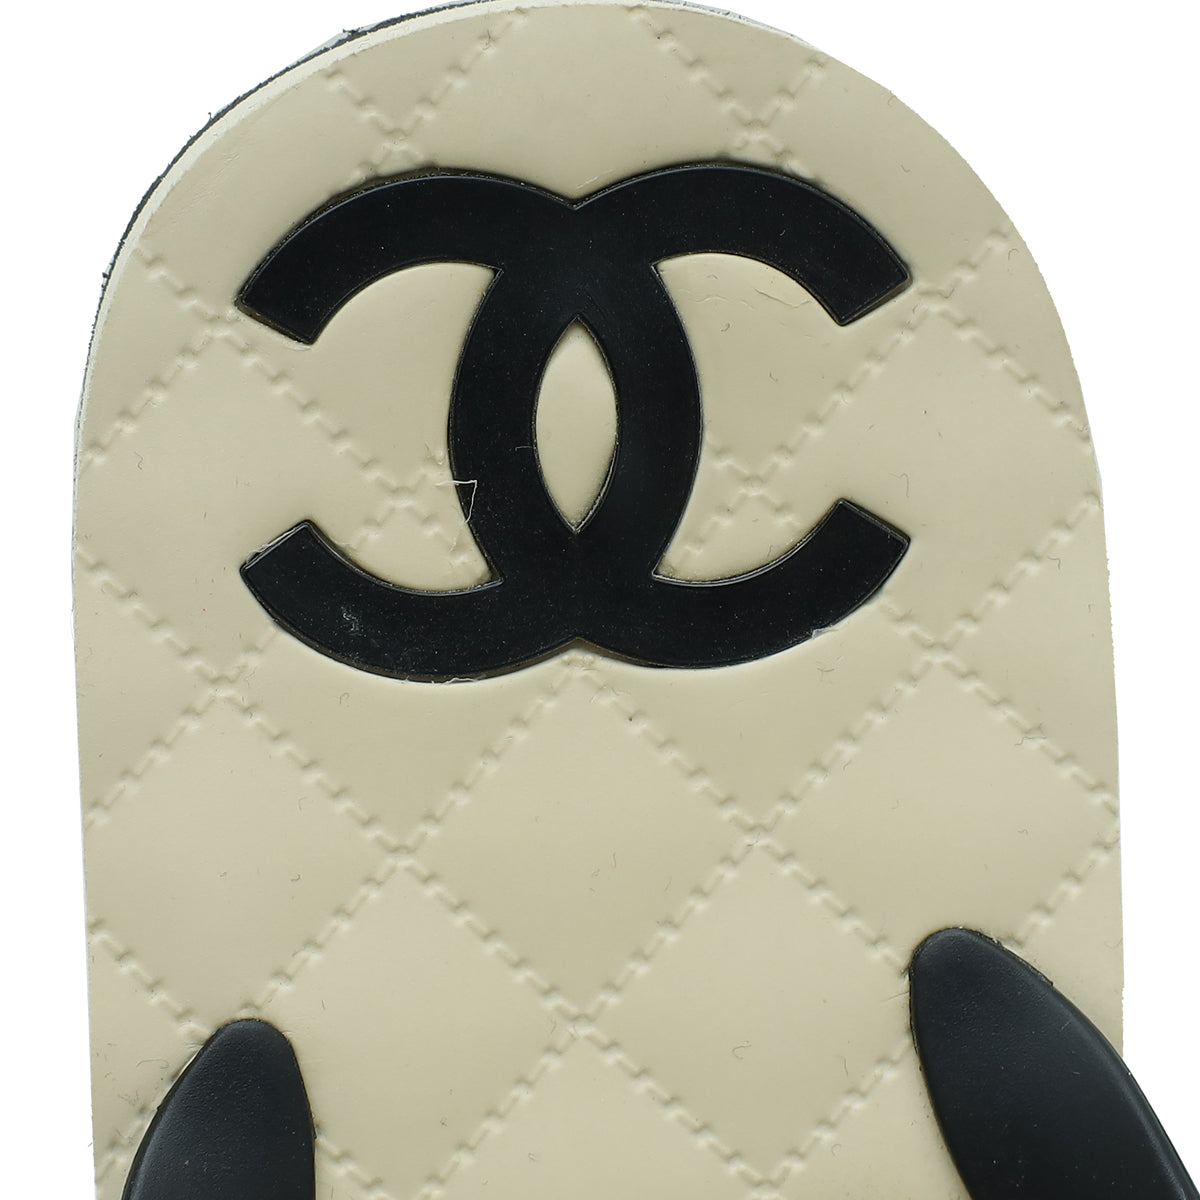 Chanel Bicolor CC Camellia Flip Flops Sandals 40